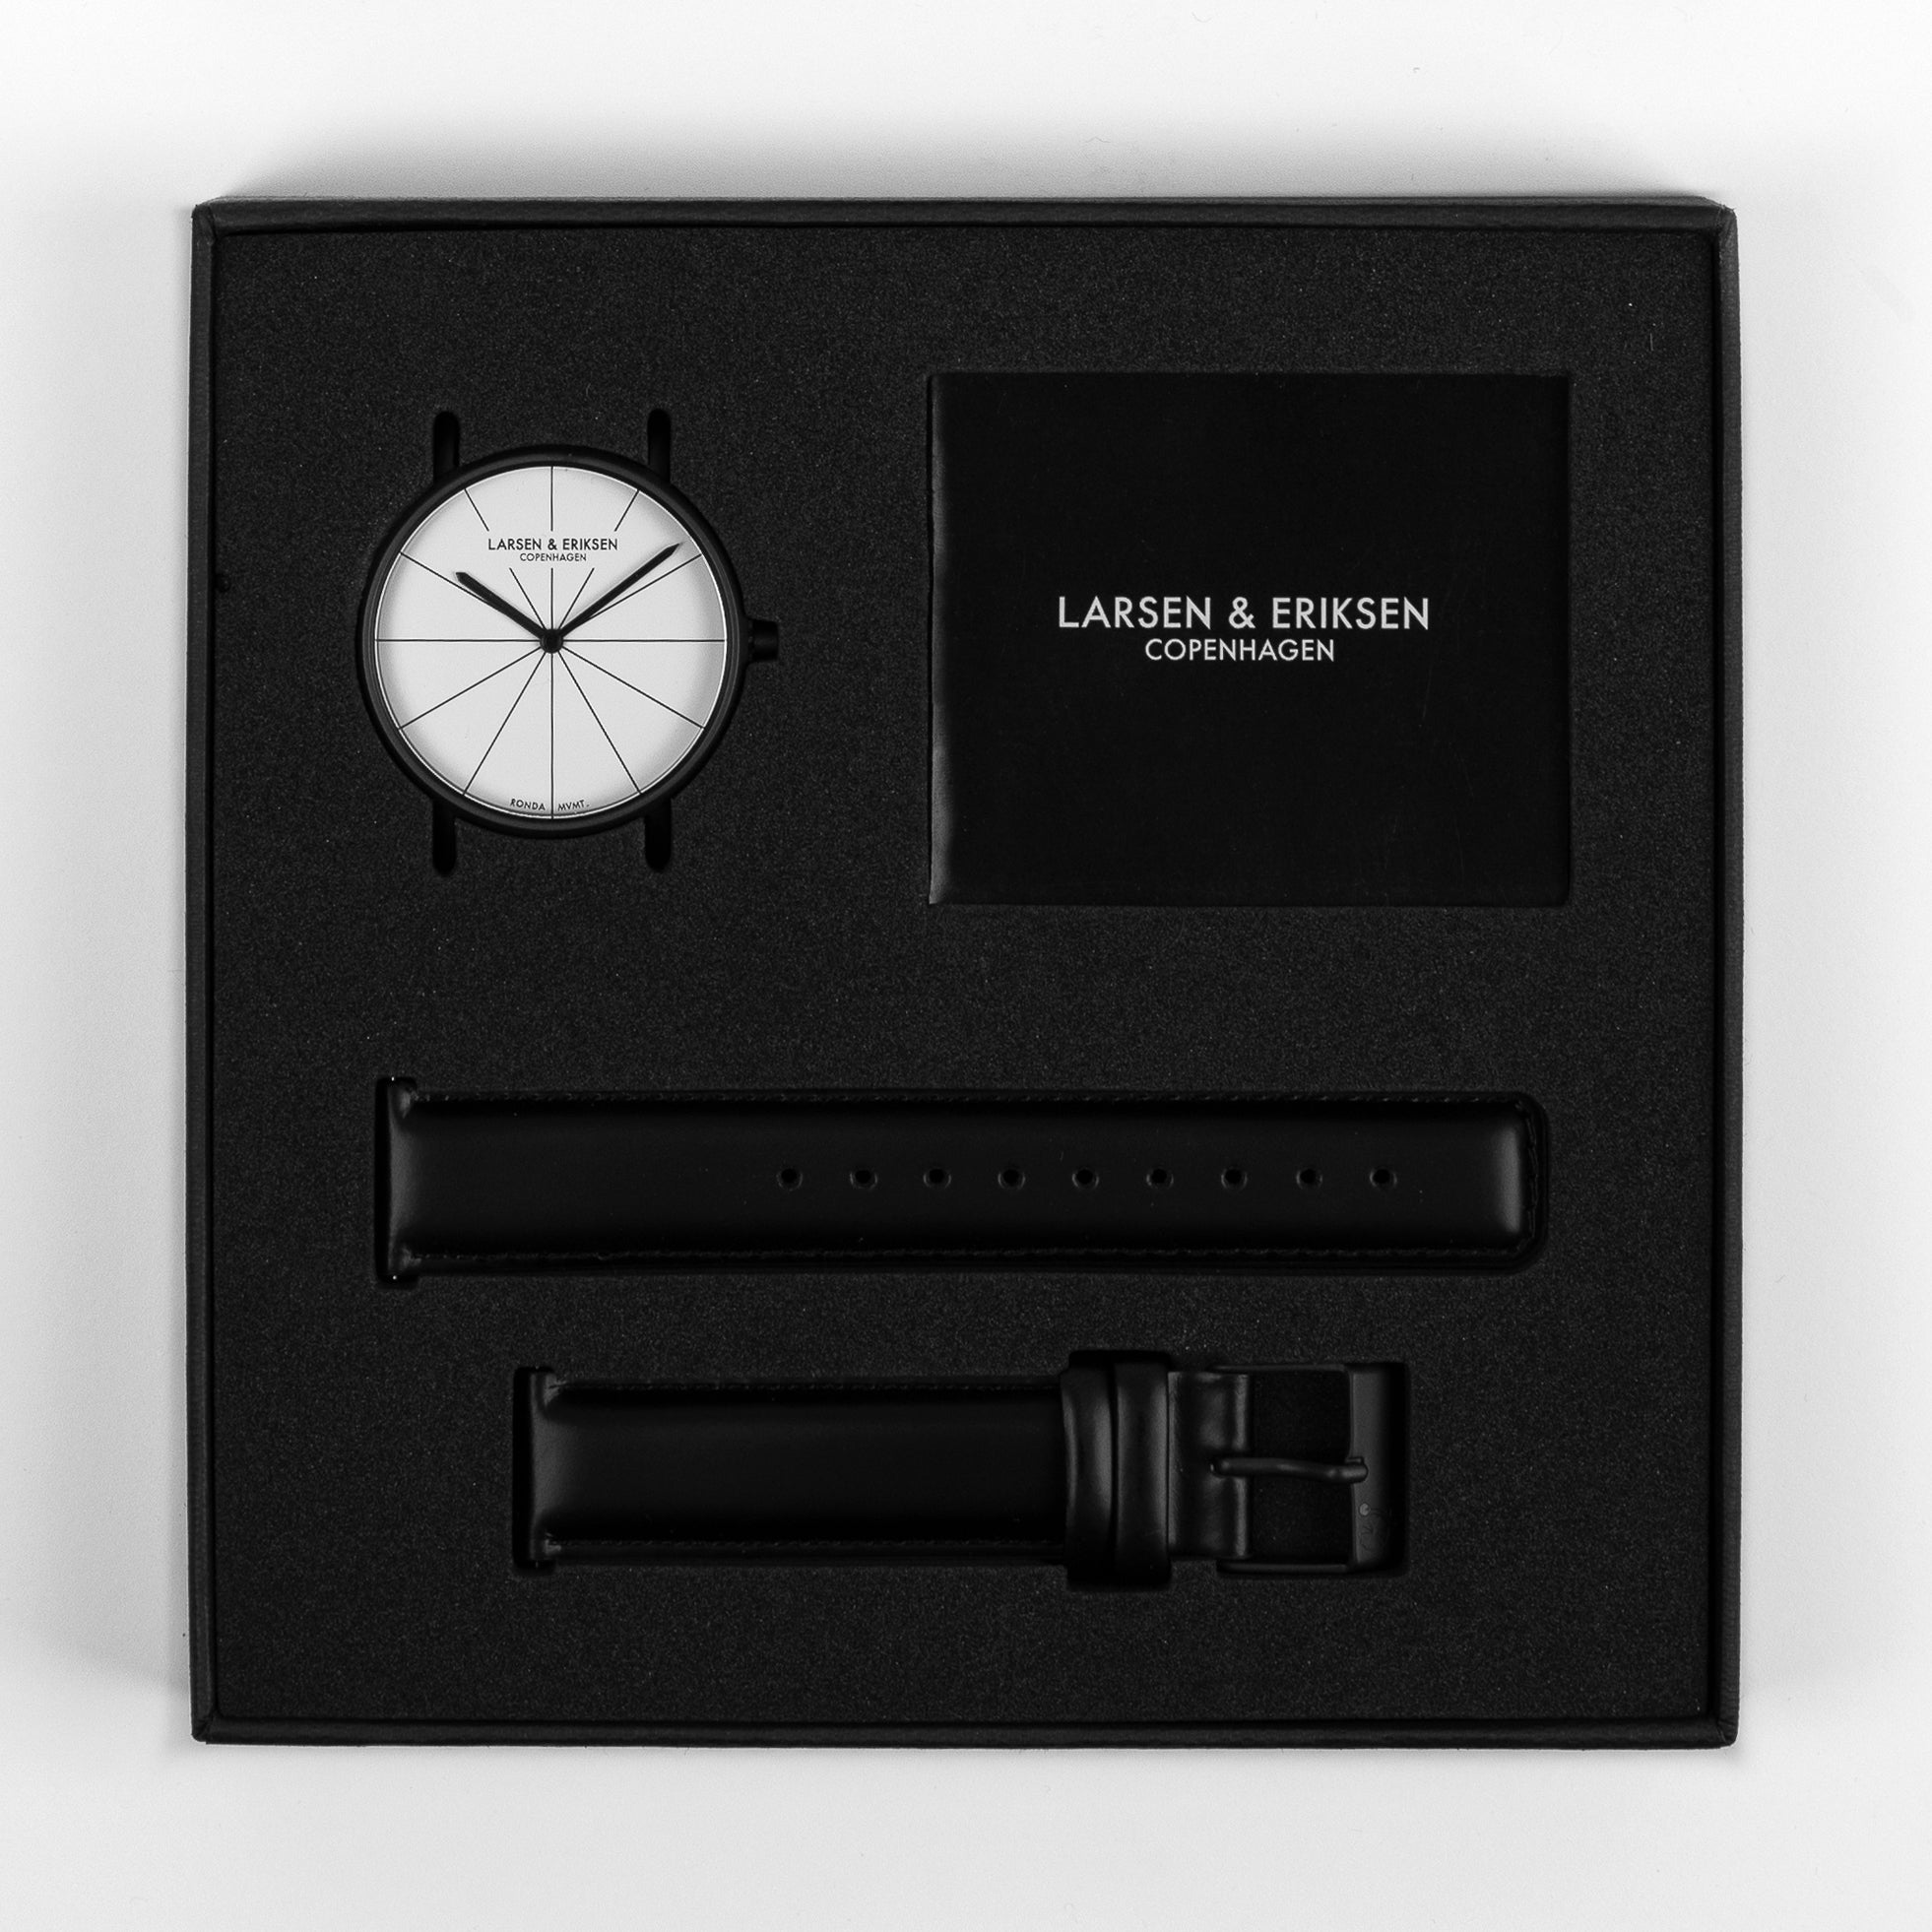 LARSEN & ERIKSEN minimalist watch